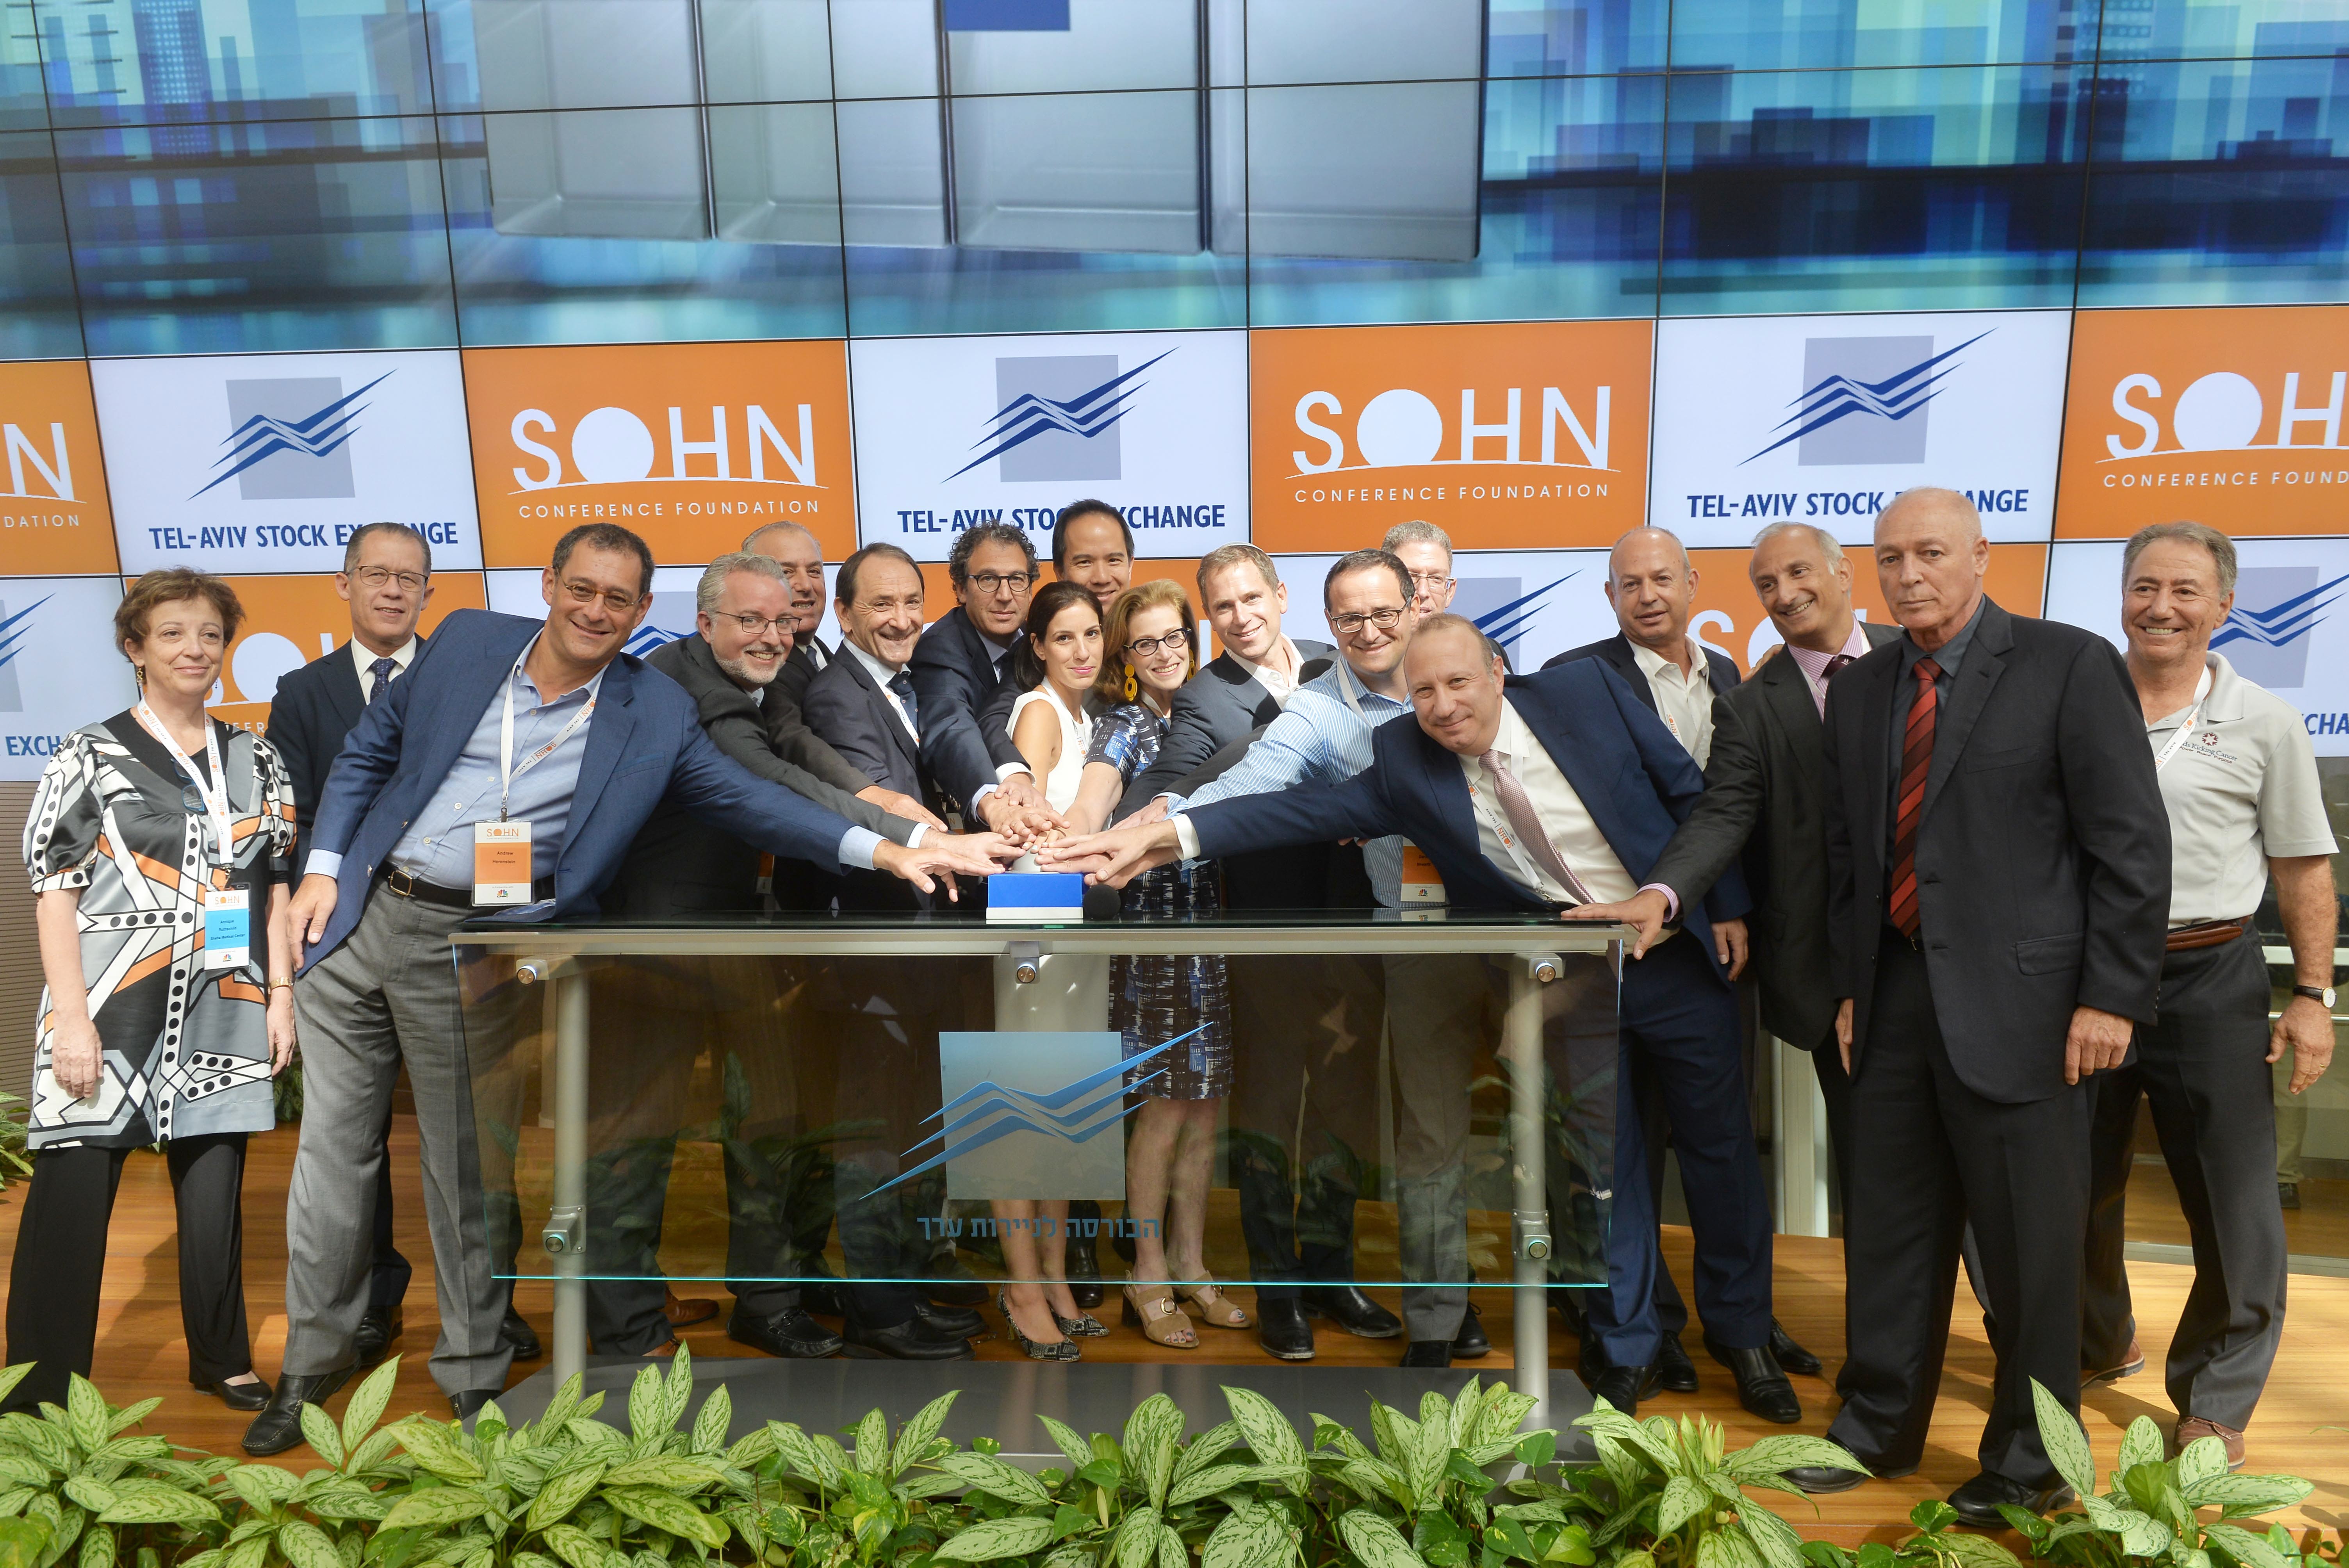 ועידת ההשקעות SOHN המתקיימת זו השנה השלישית בישראל נפתחה הבוקר בטקס פתיחת מסחר בבורסה